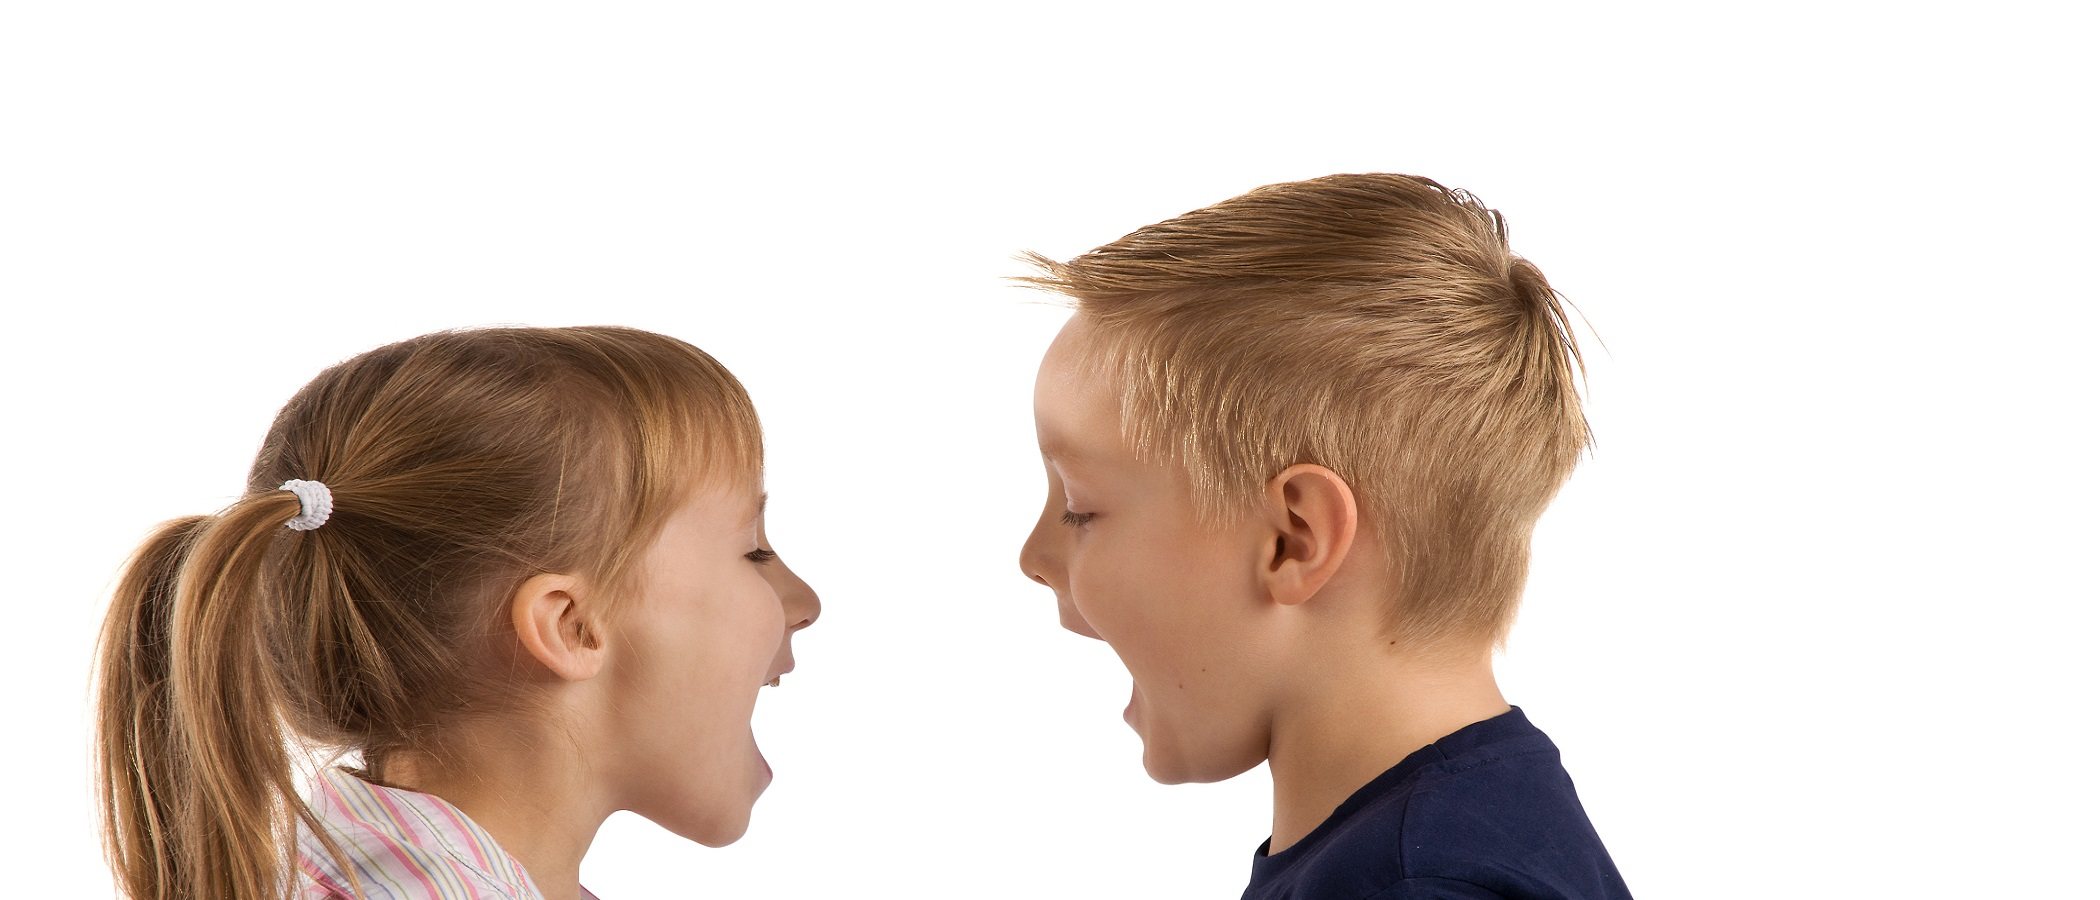 Cómo hablar con un niño manipulador o pasivo agresivo - Bekia Padres